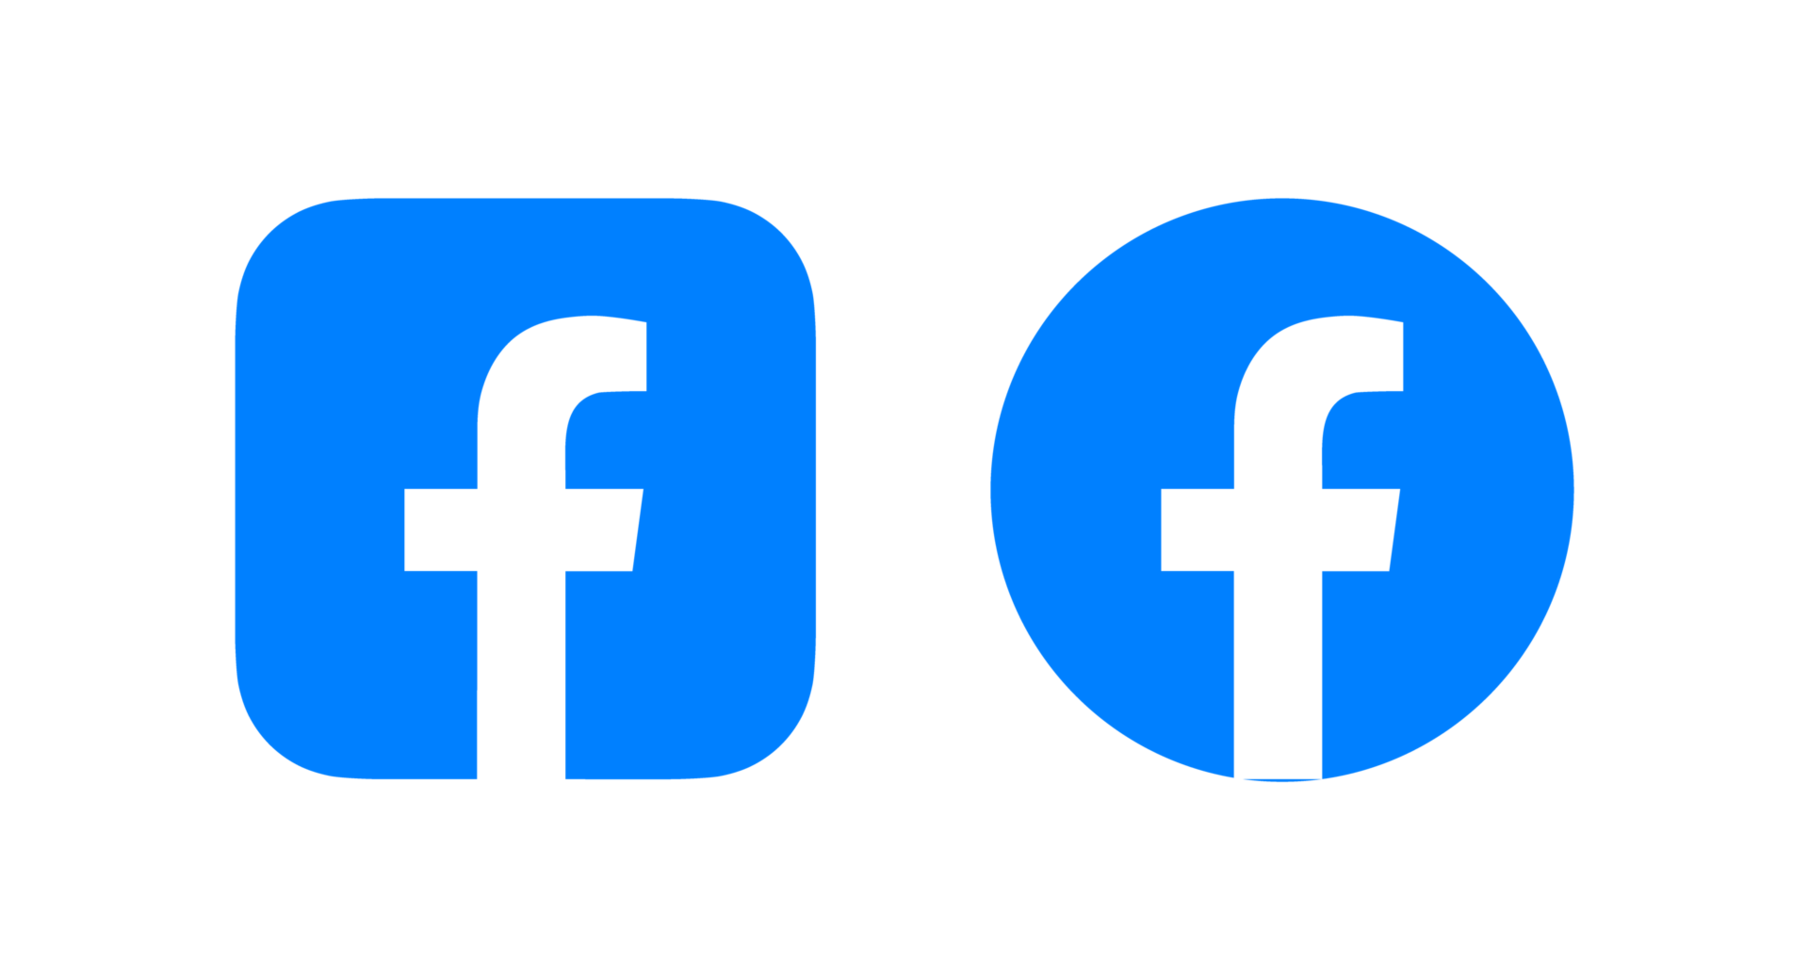 Facebook logotyp png, Facebook ikon transparent png